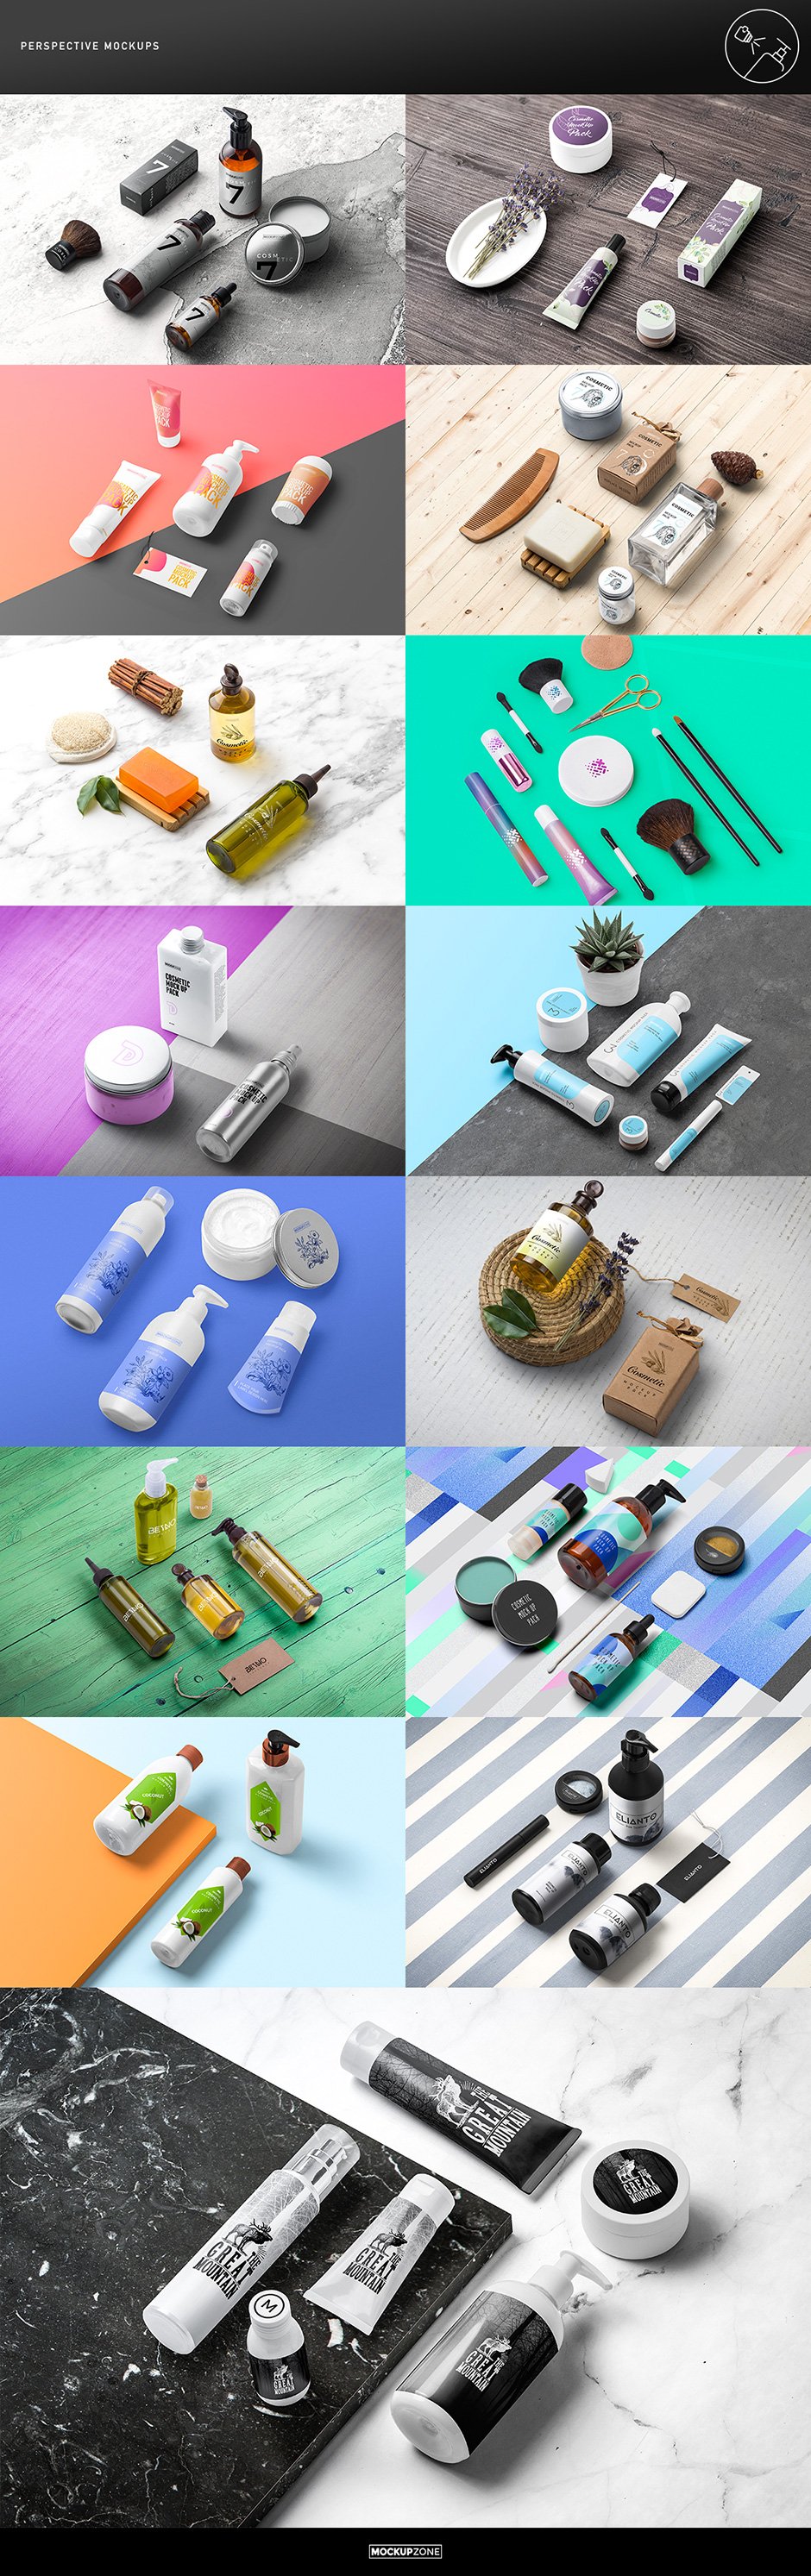 Cosmetic Packaging Branding MockUp